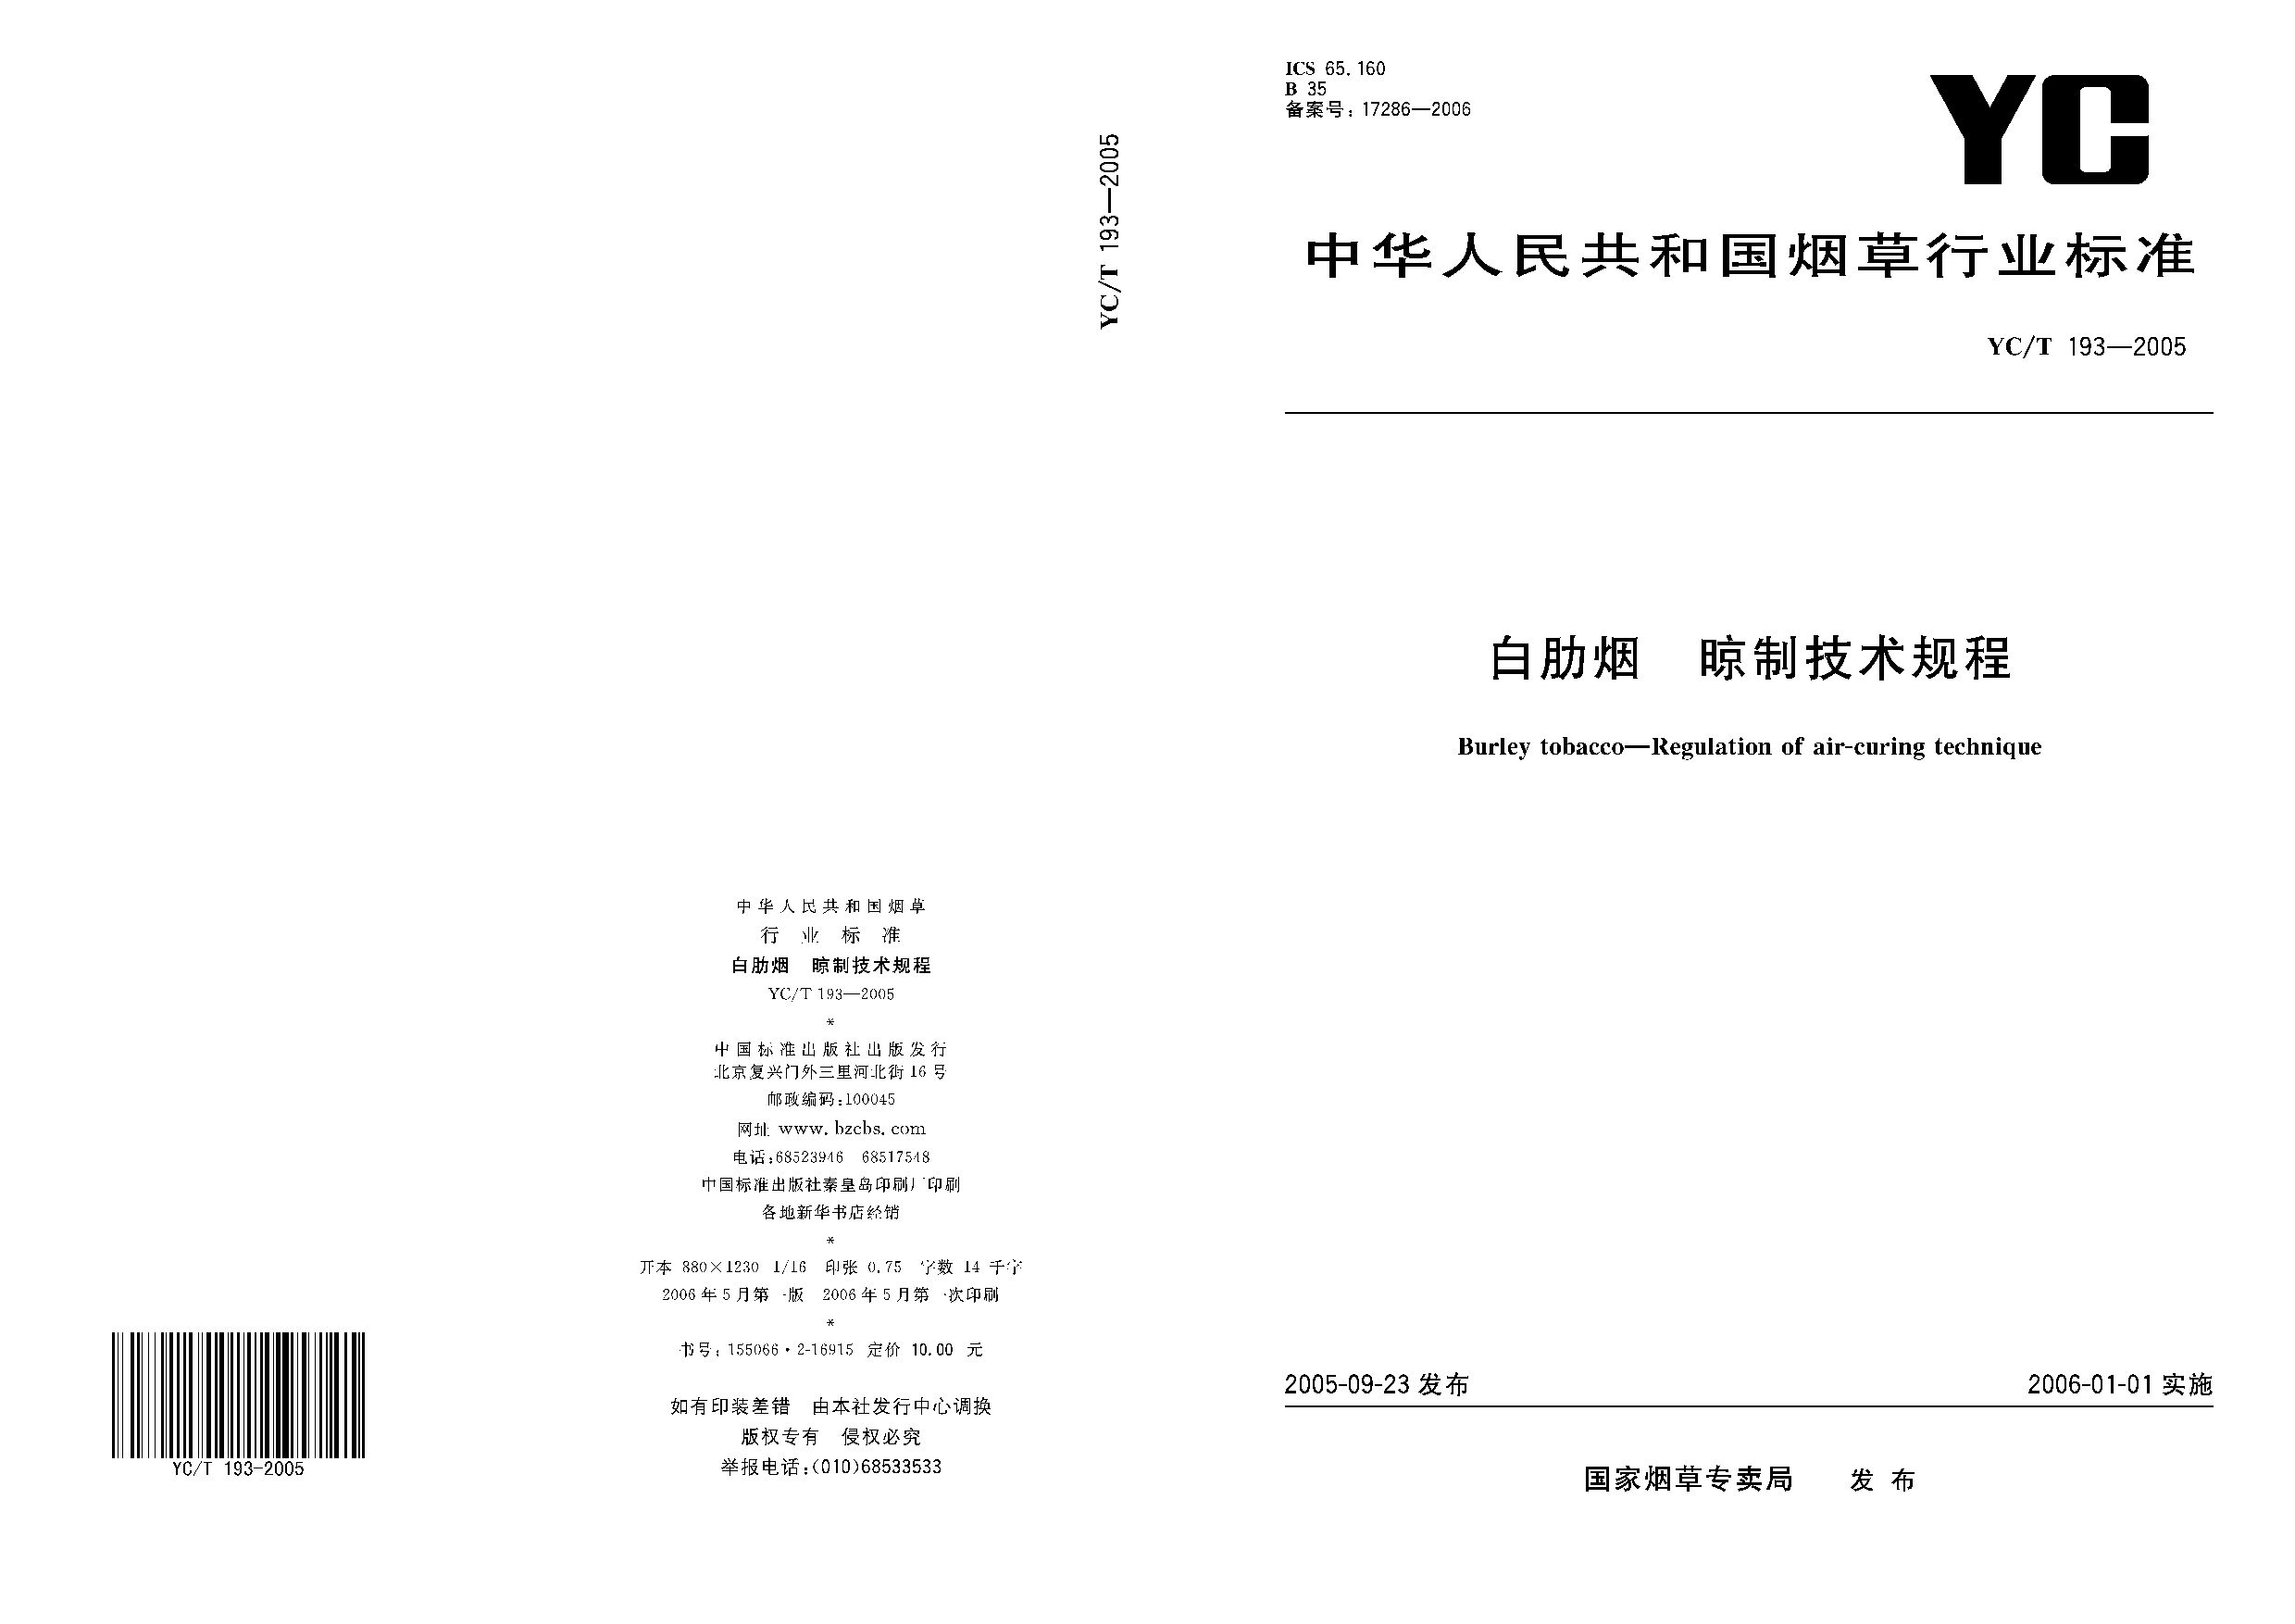 YC/T 193-2005